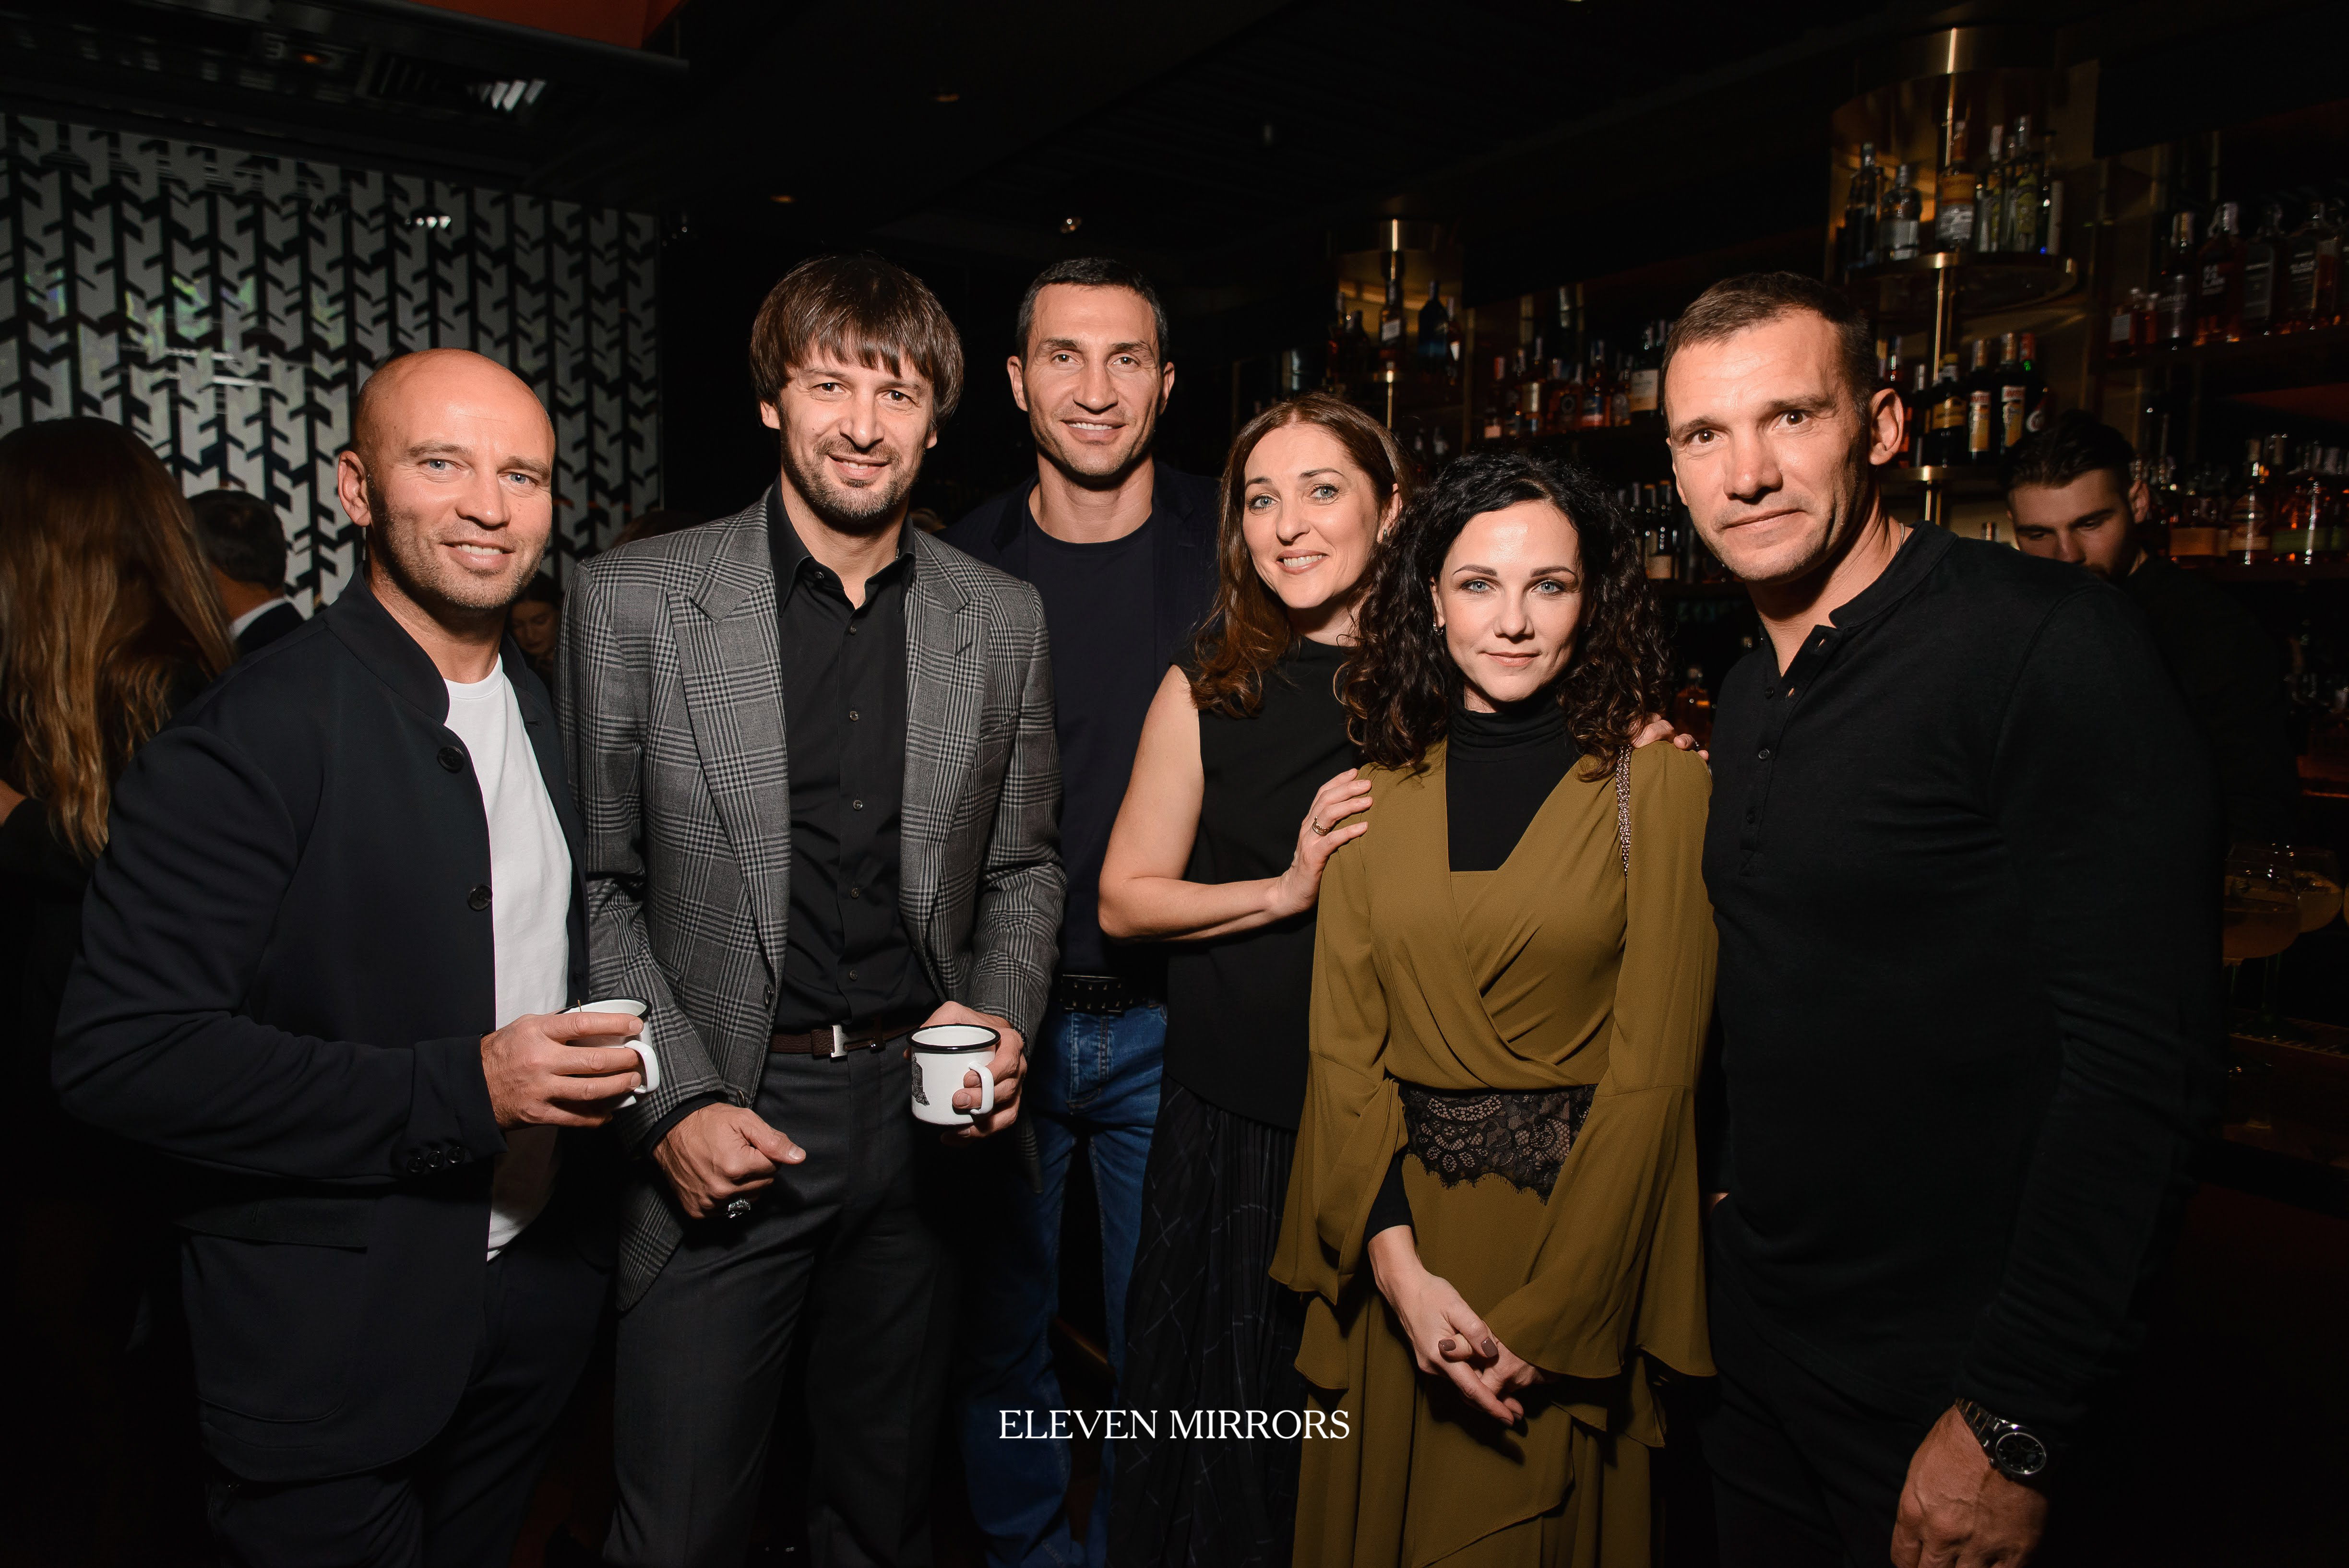 Усик, Шевченко и другие звезды украинского спорта посетили вечеринку посвященную открытию дизайн-гостиницы - изображение 5